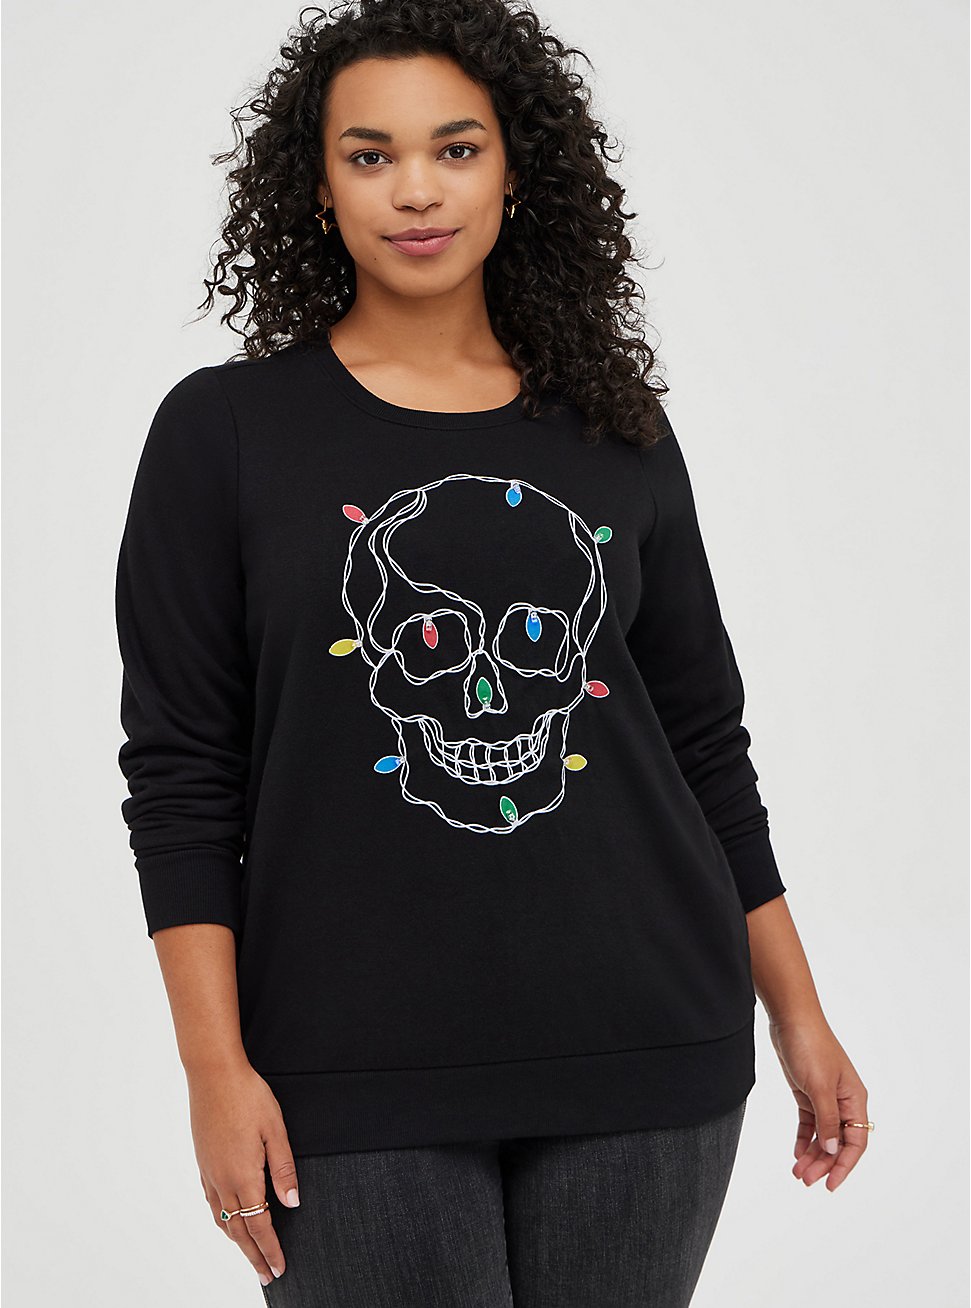 Sweatshirt - Cozy Fleece Light Up Skull, DEEP BLACK, hi-res